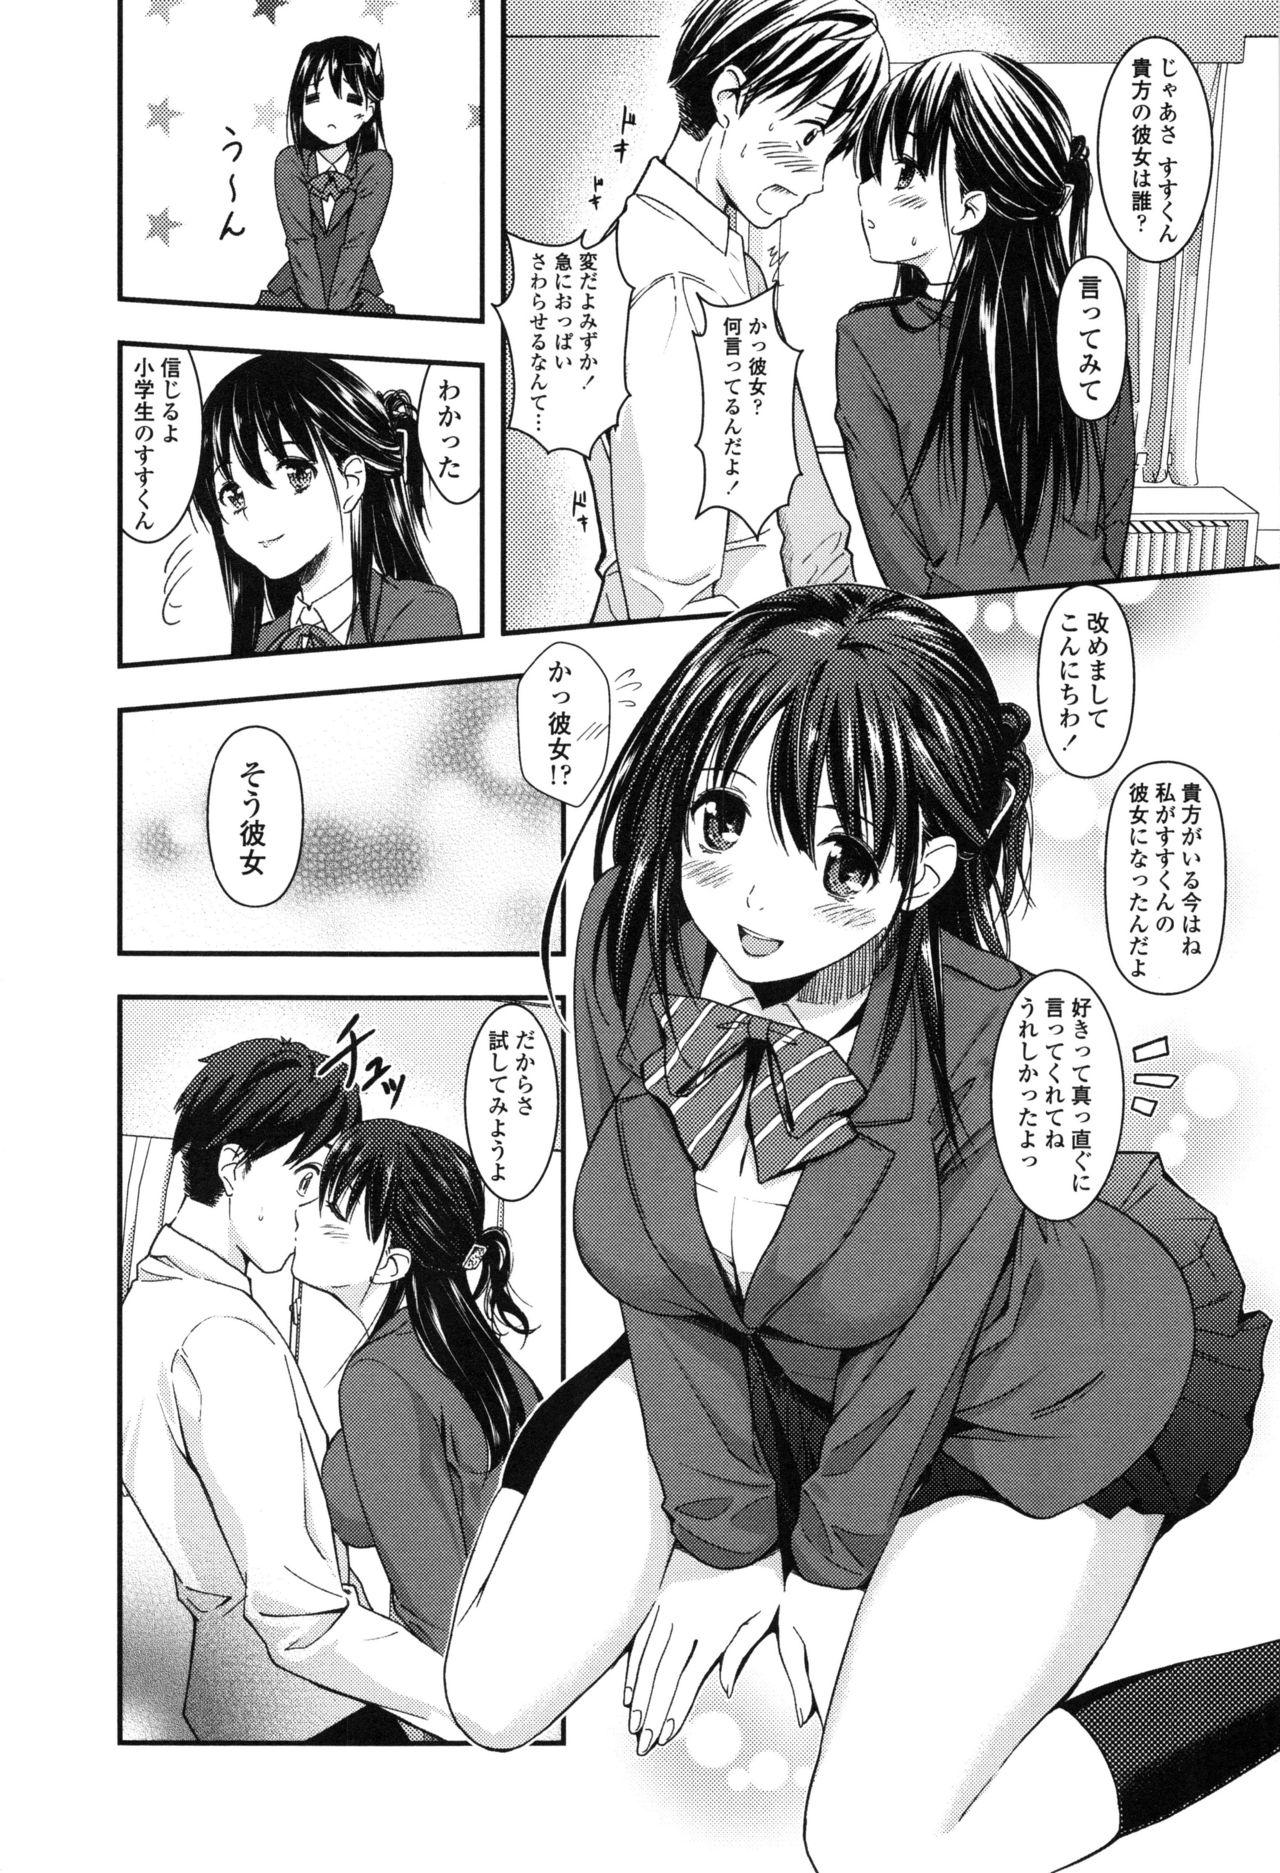 Seifuku no Mama Aishinasai! - Love in school uniform 173